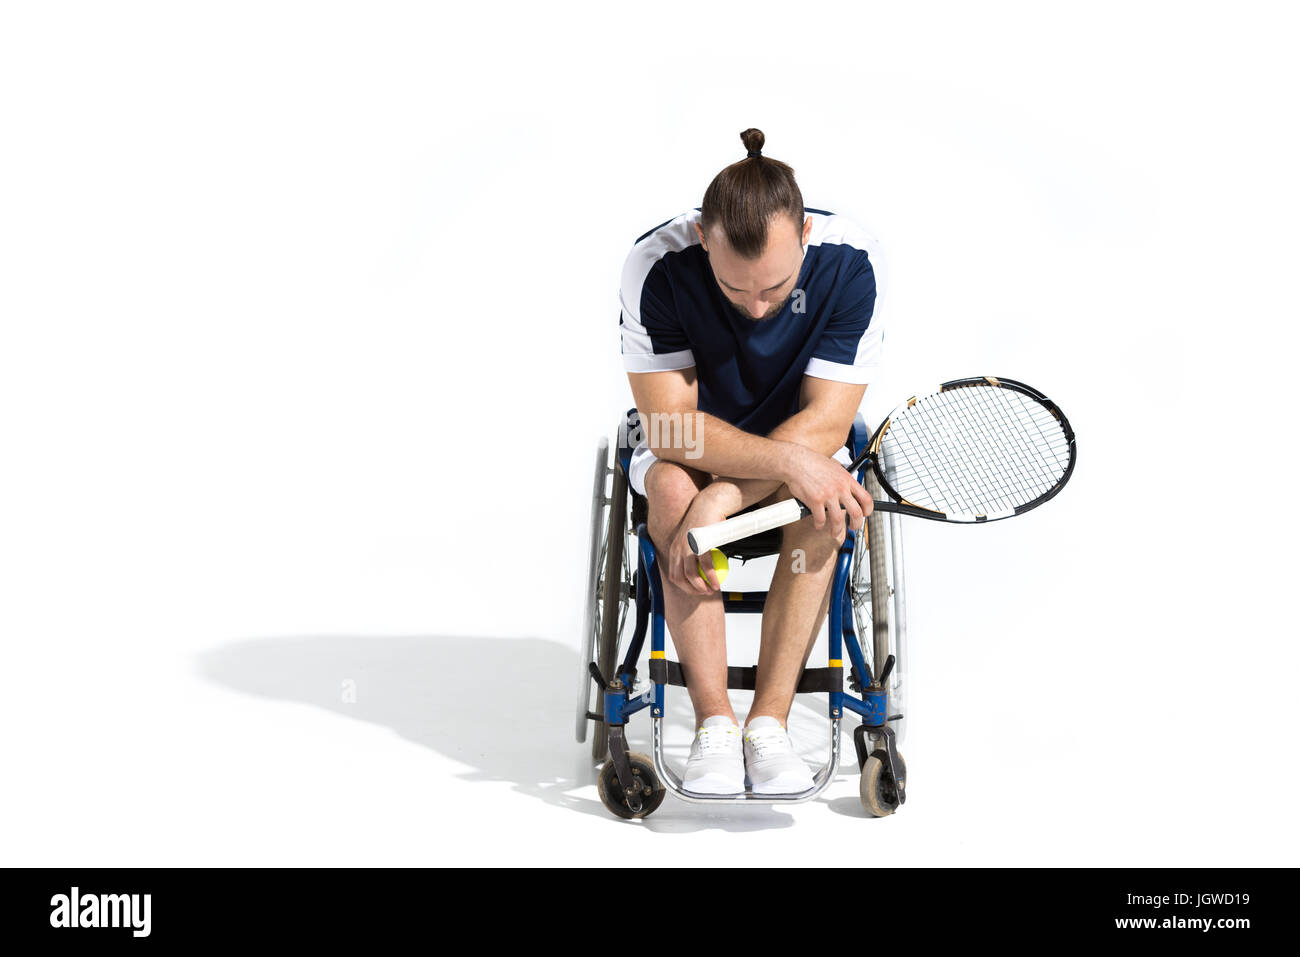 Mobilité jeune homme assis dans un fauteuil roulant et holding tennis racquet isolated on white Banque D'Images